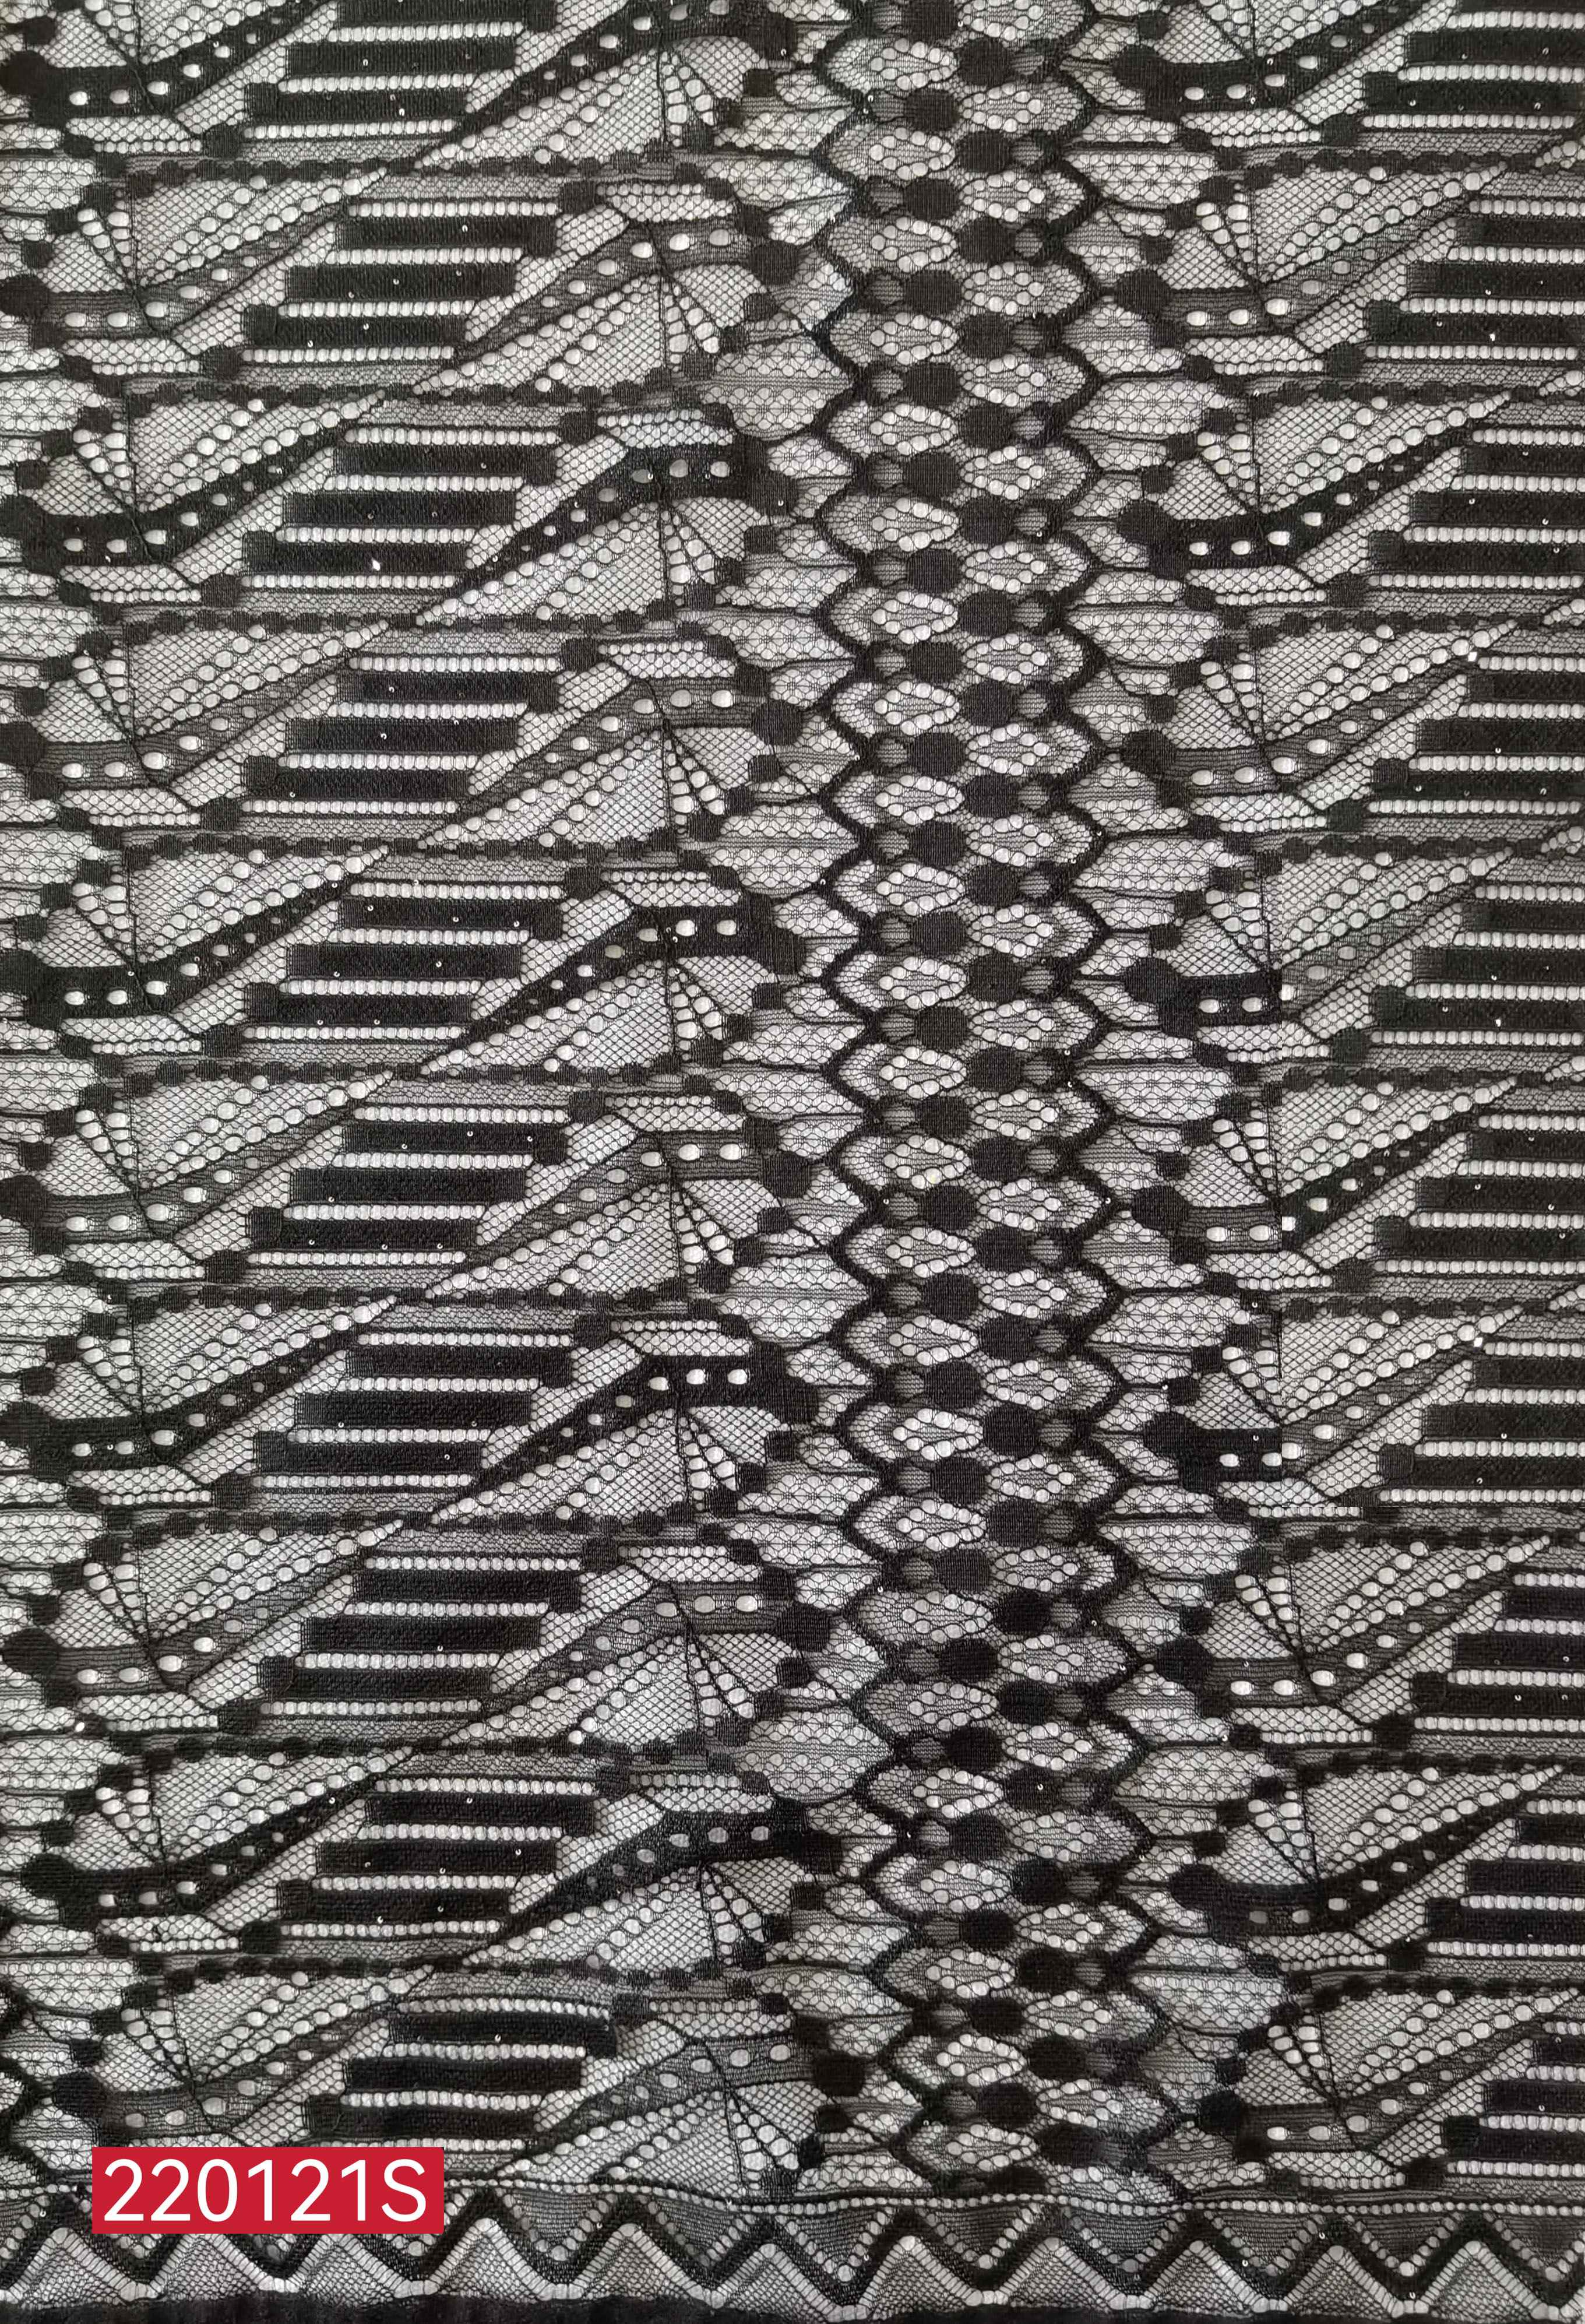 Lizhiying lace fabric geometric DIY fabric